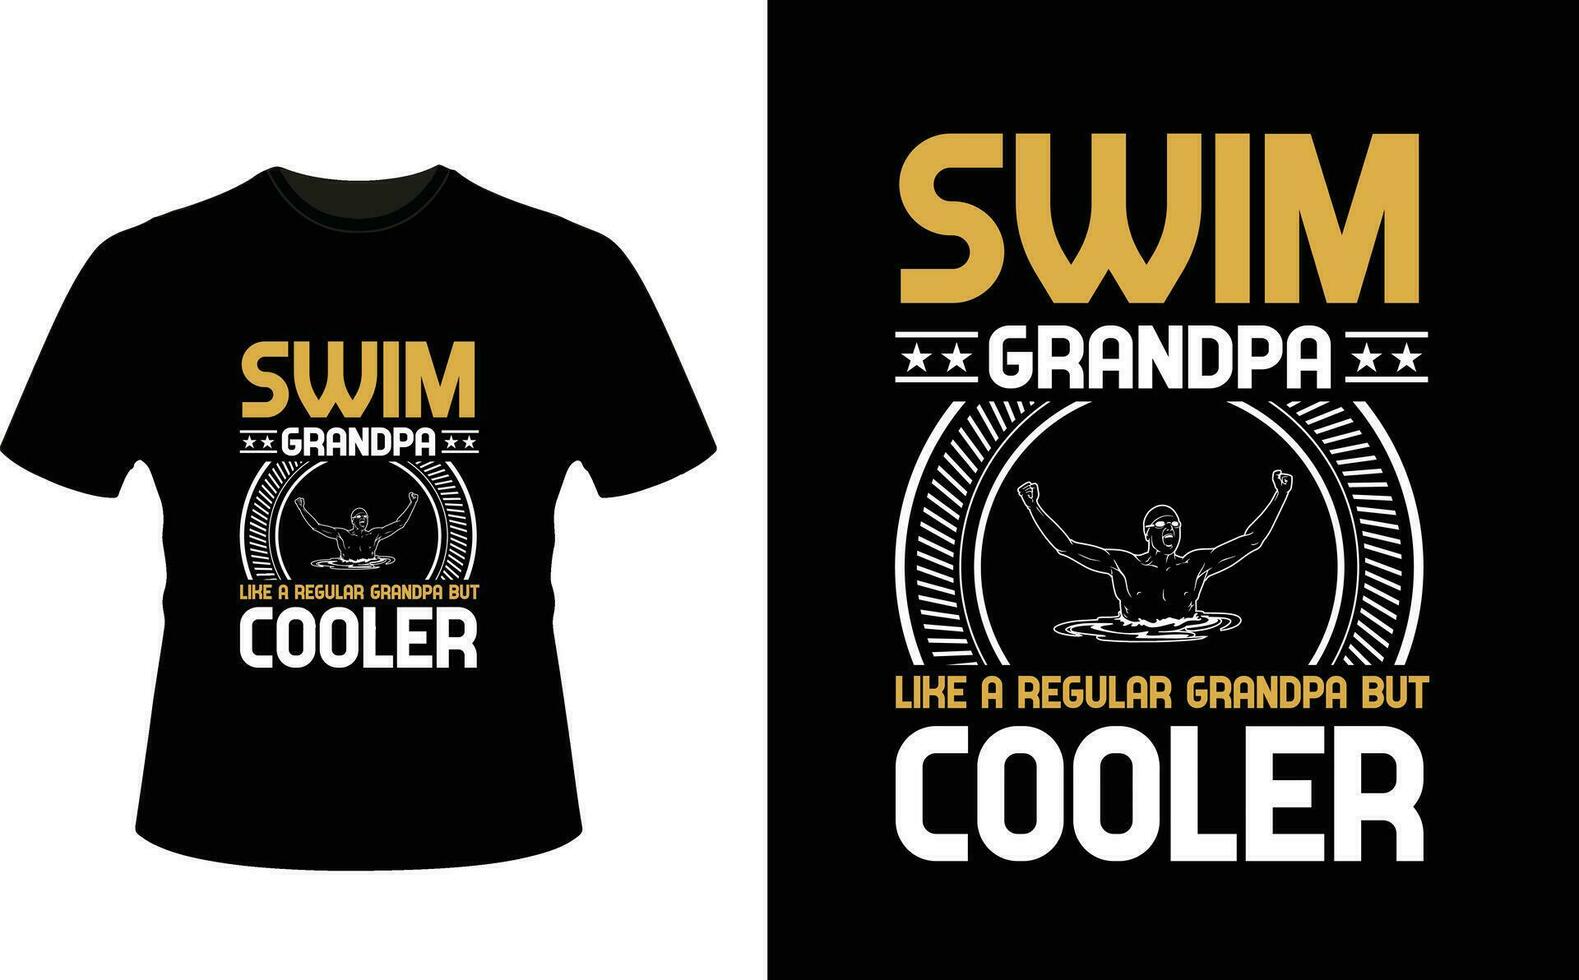 zwemmen opa Leuk vinden een regelmatig opa maar koeler of opa t-shirt ontwerp of opa dag t overhemd ontwerp vector